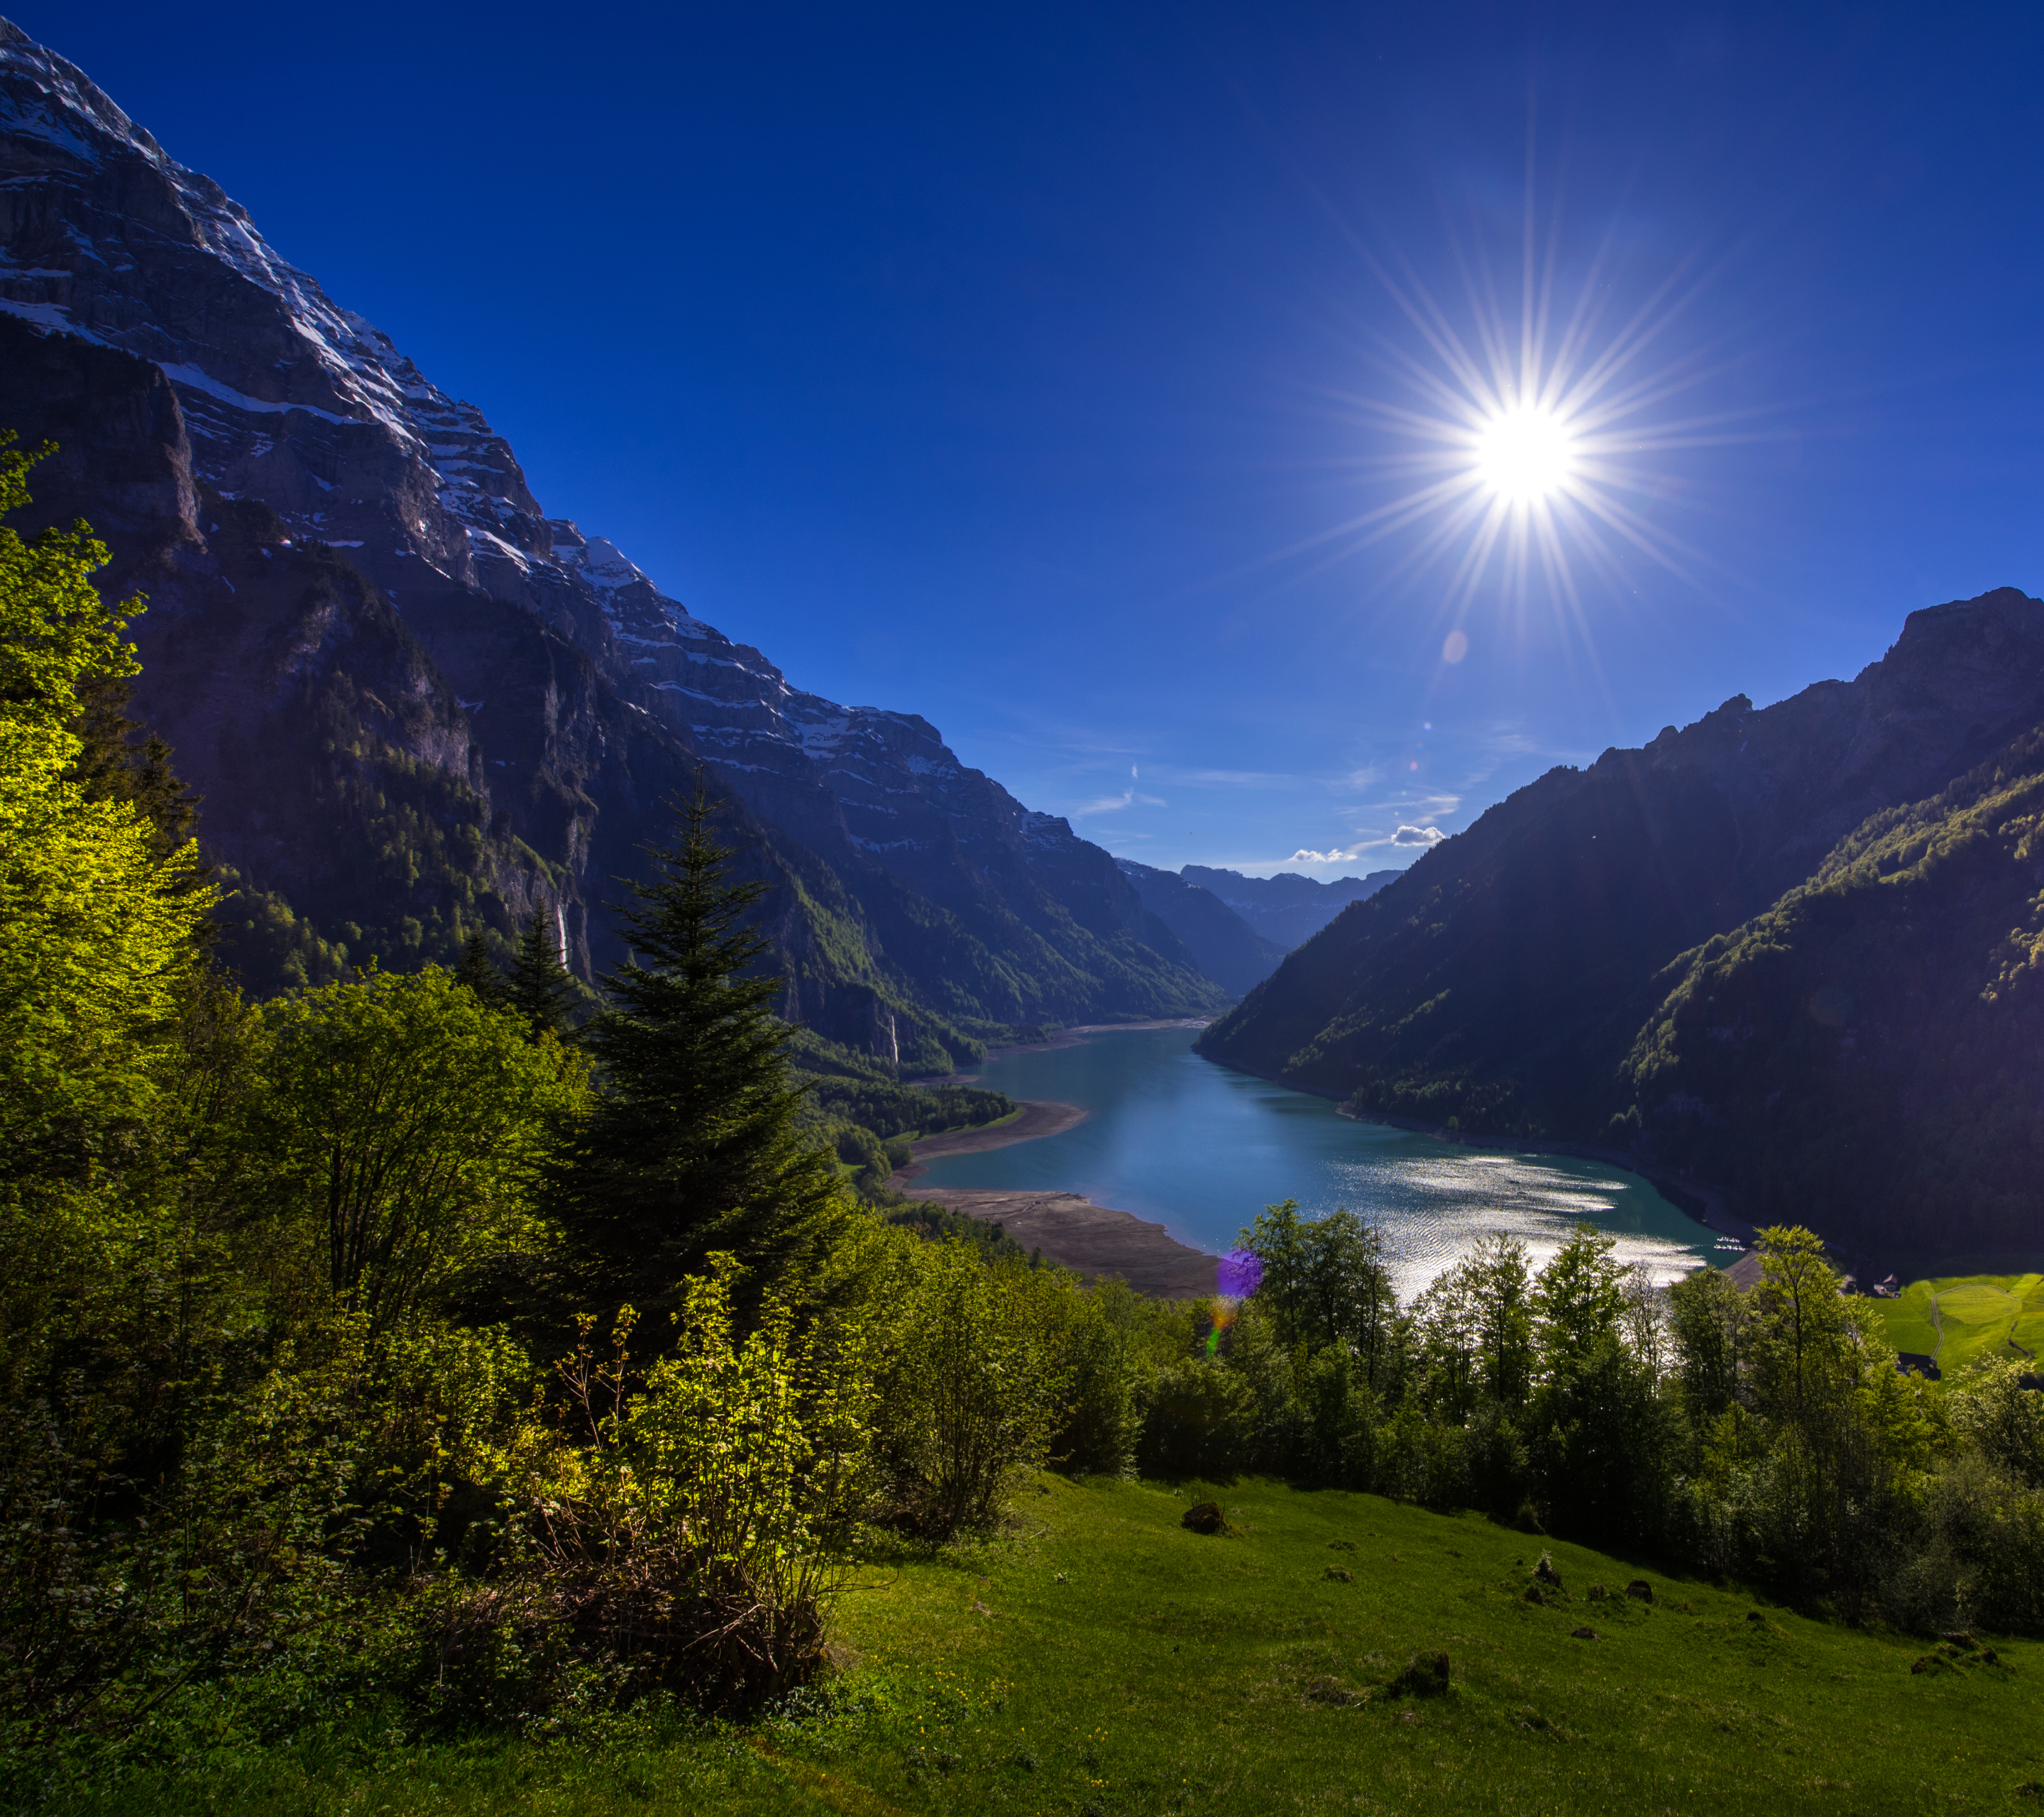 Скачать картинку Пейзаж, Солнце, Гора, Озеро, Швейцария, Земля/природа в телефон бесплатно.